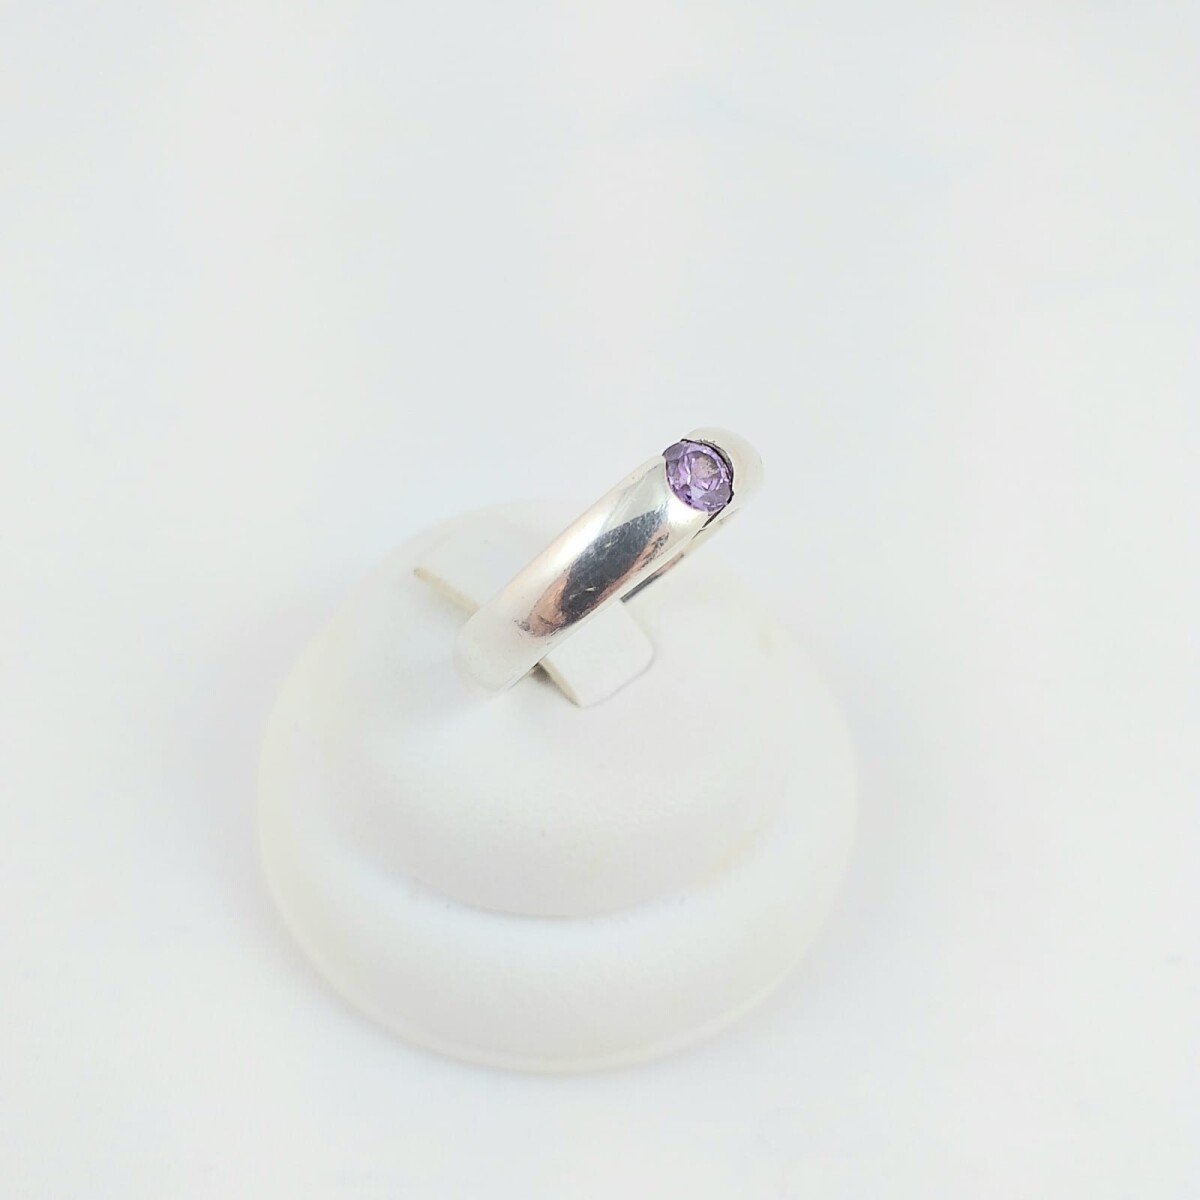 Anillo de plata 925, circonia violeta engarzada, ancho 4mm, diámetro interno 17mm #12. 